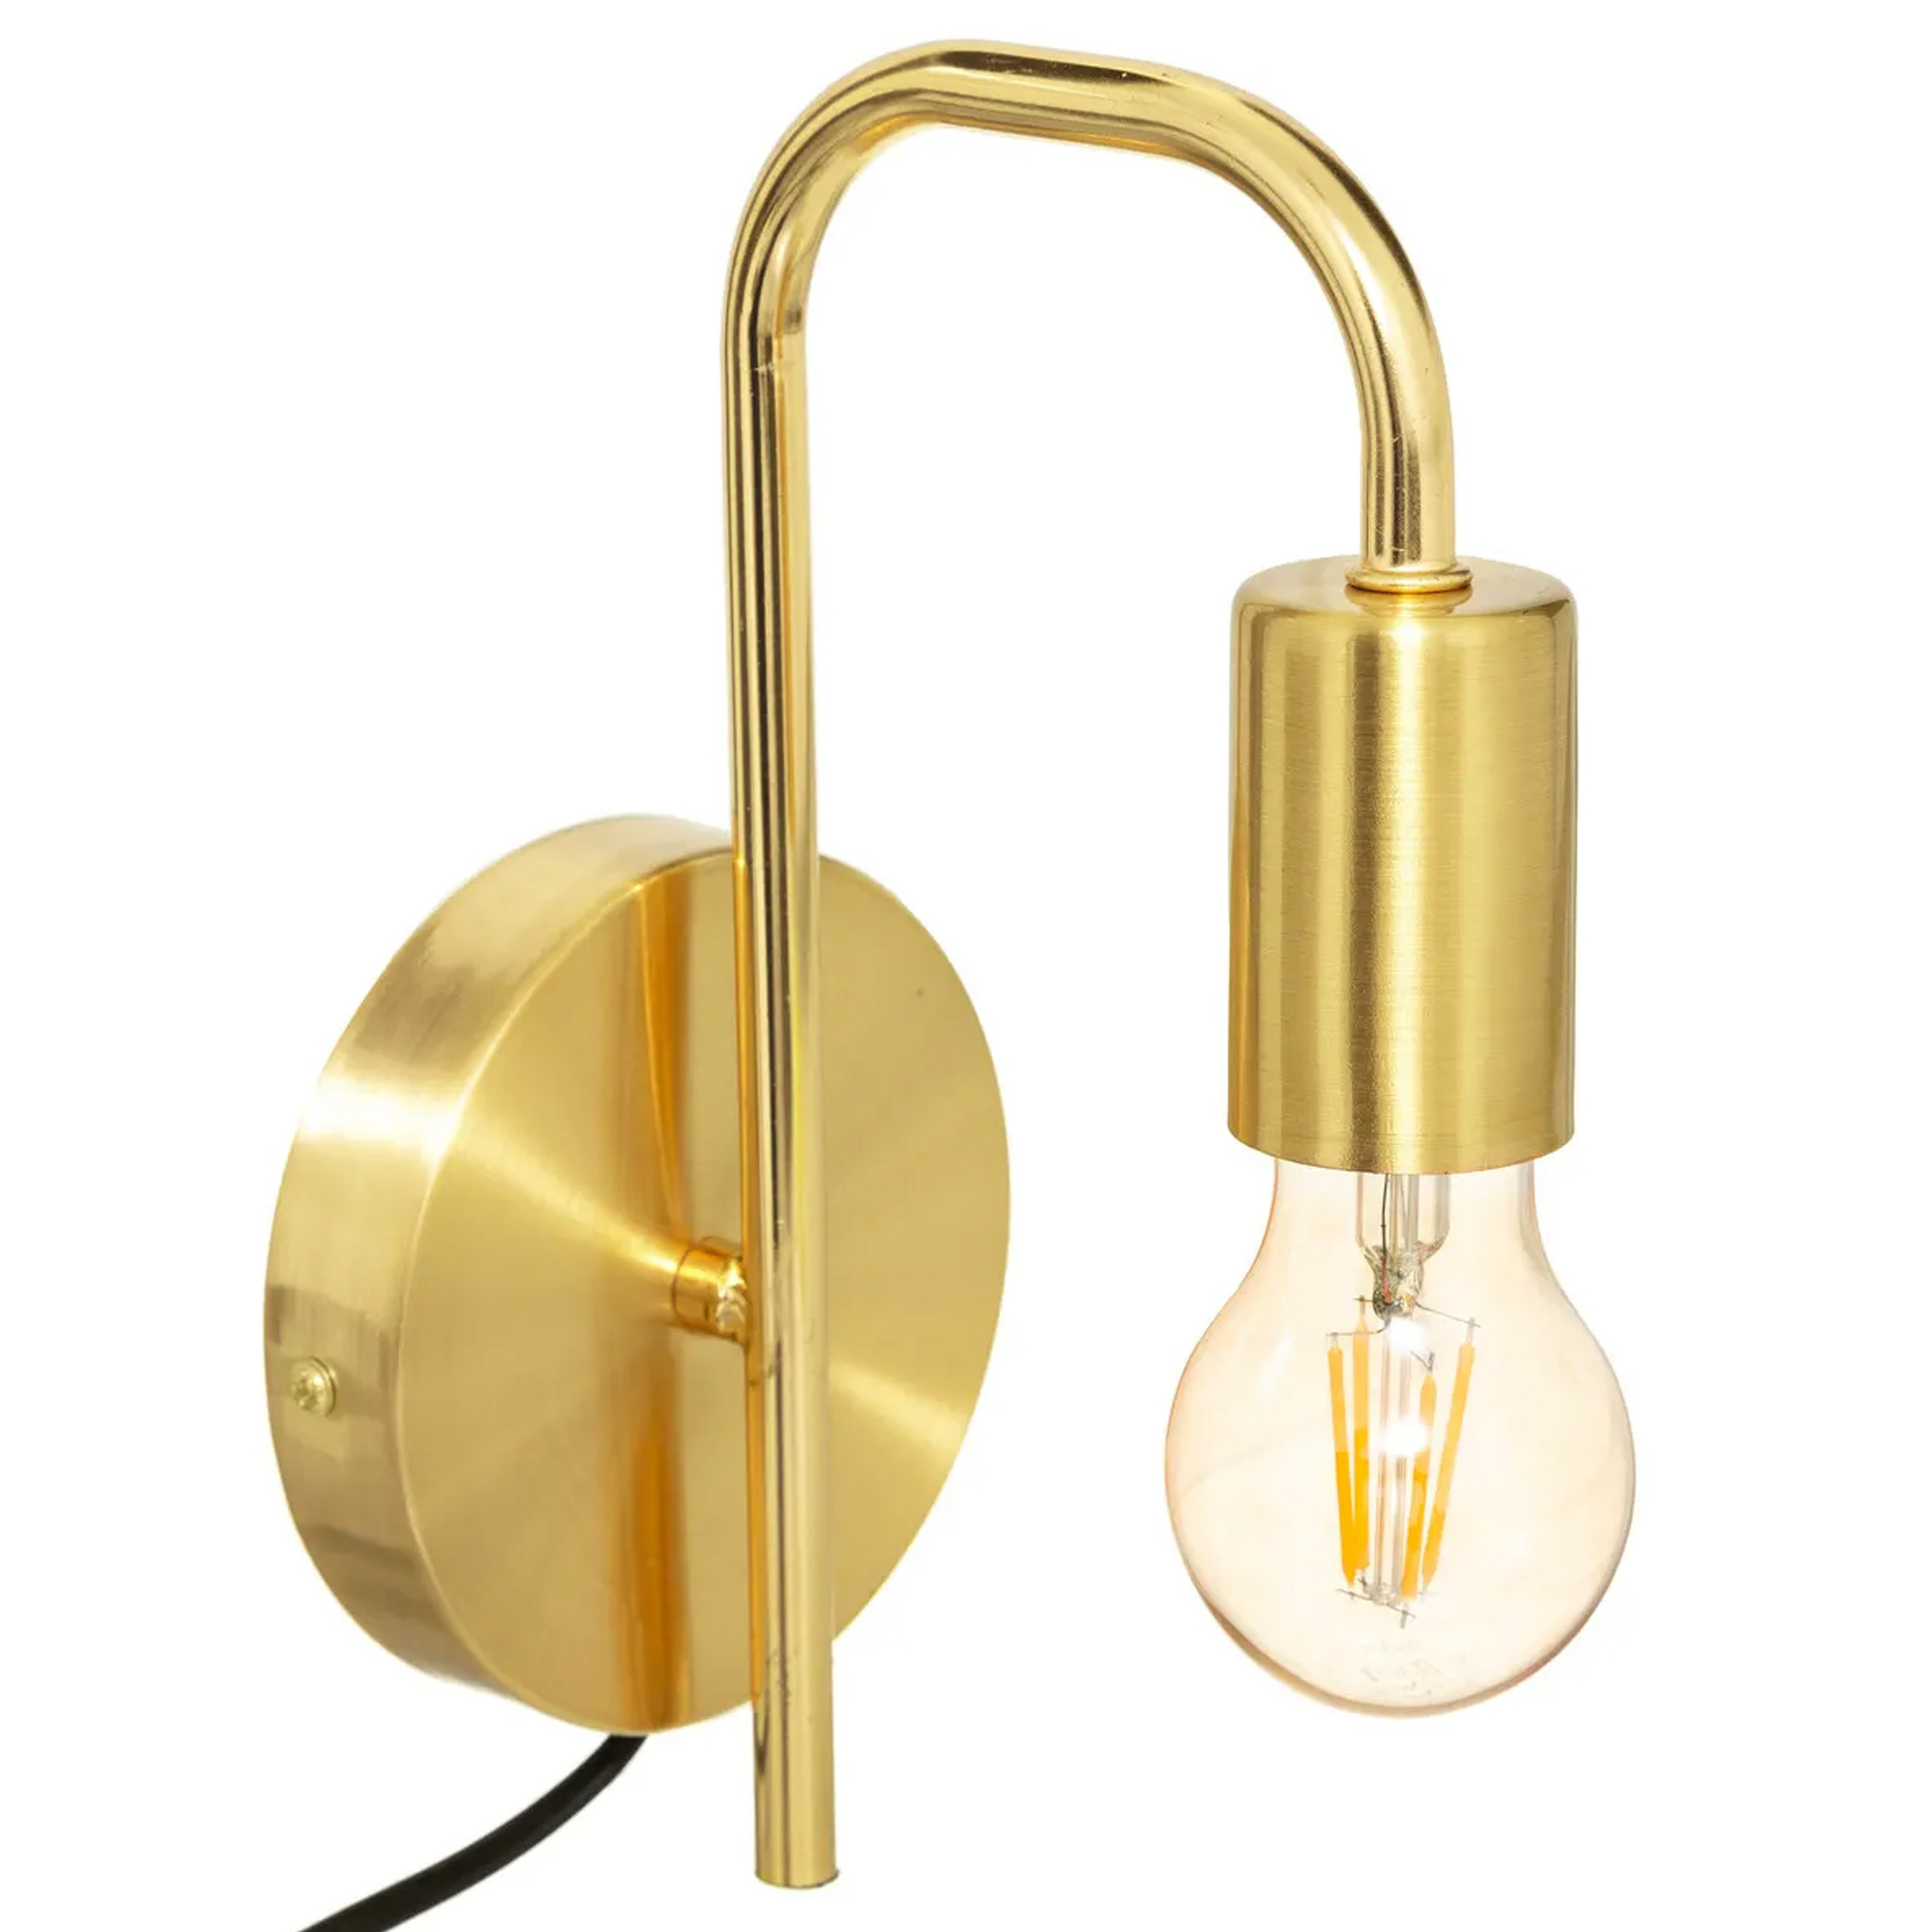 Atmosphera wandlamp 12 x 25 cm goud kleur E27 fitting muur montage metaal